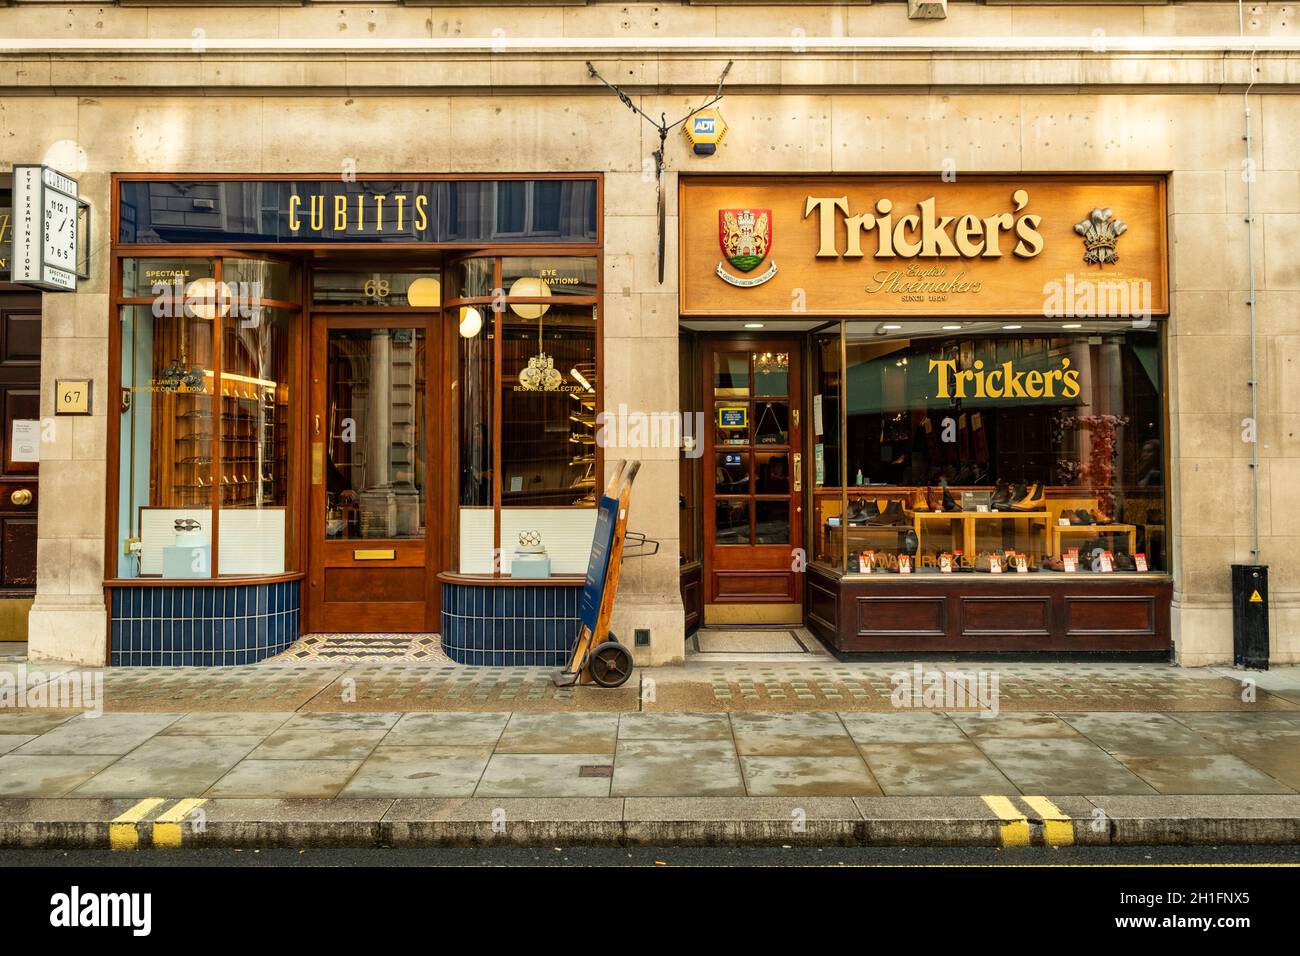 Londra - Trickers e Cubitts negozi in Jermyn Street a St James. Una strada per lo shopping famosa per i suoi esclusivi marchi di lusso Foto Stock